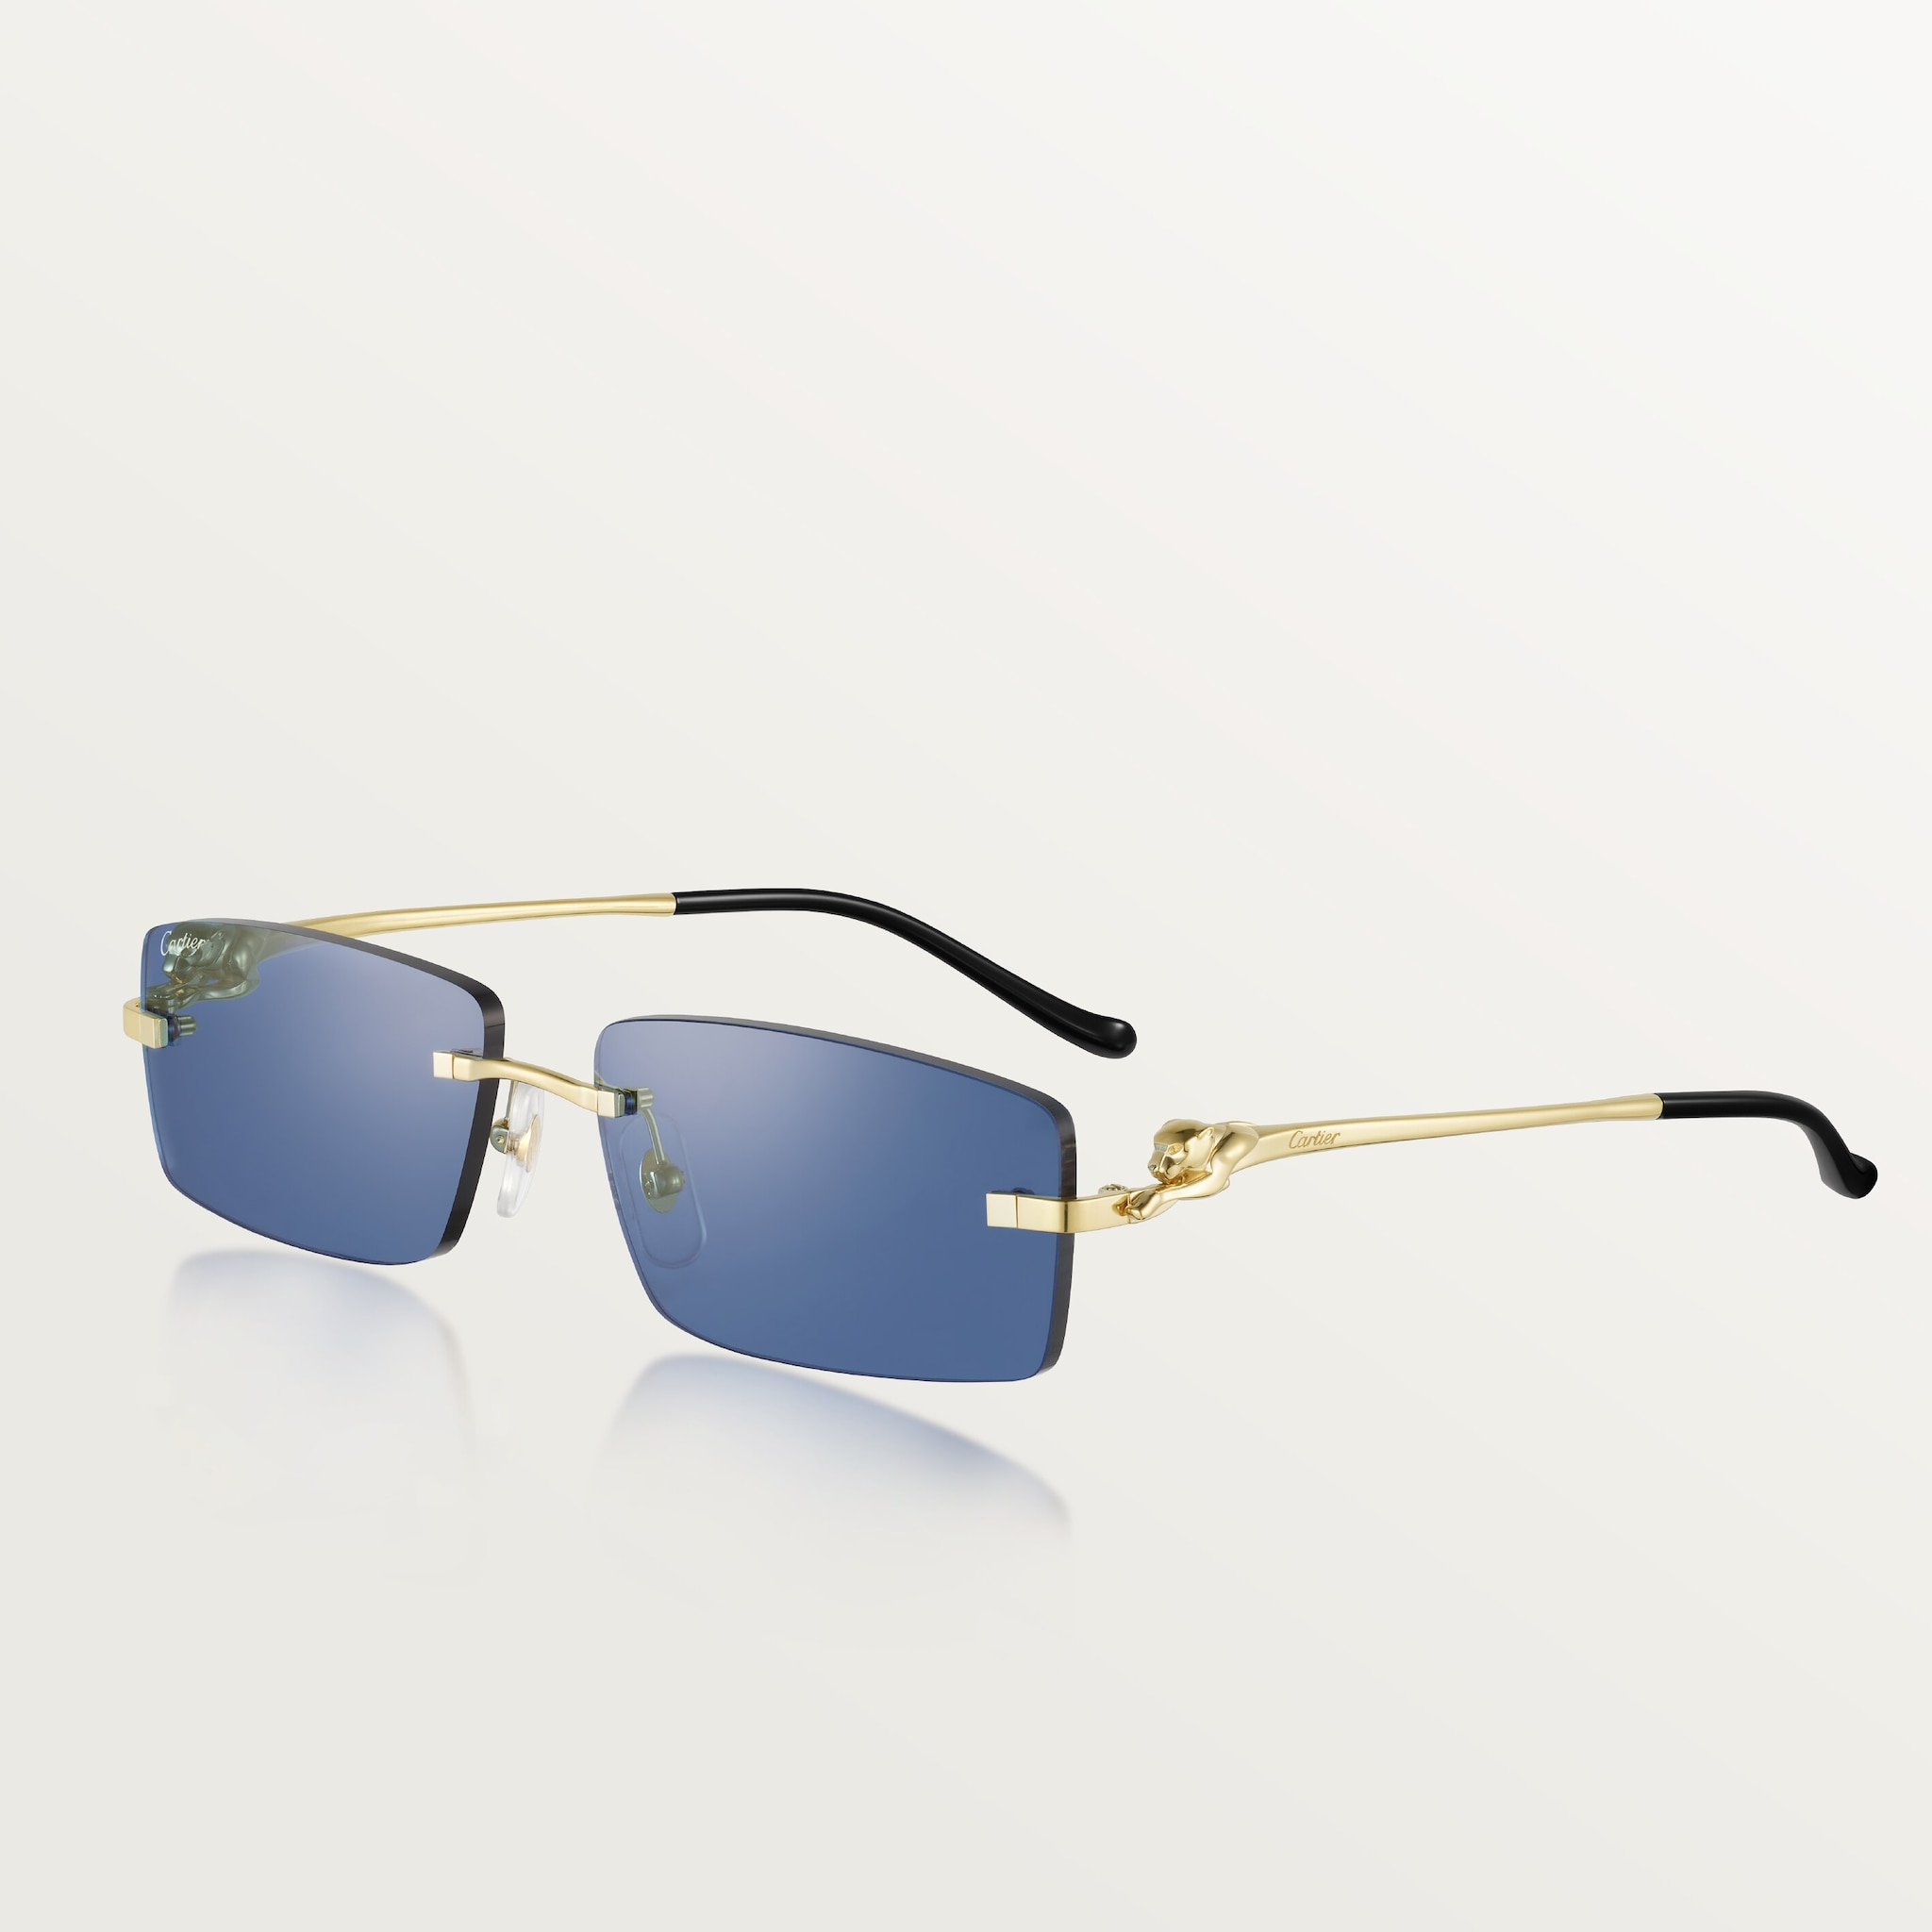 Gafas de sol Panthère de CartierMetal acabado dorado liso, lentes azules